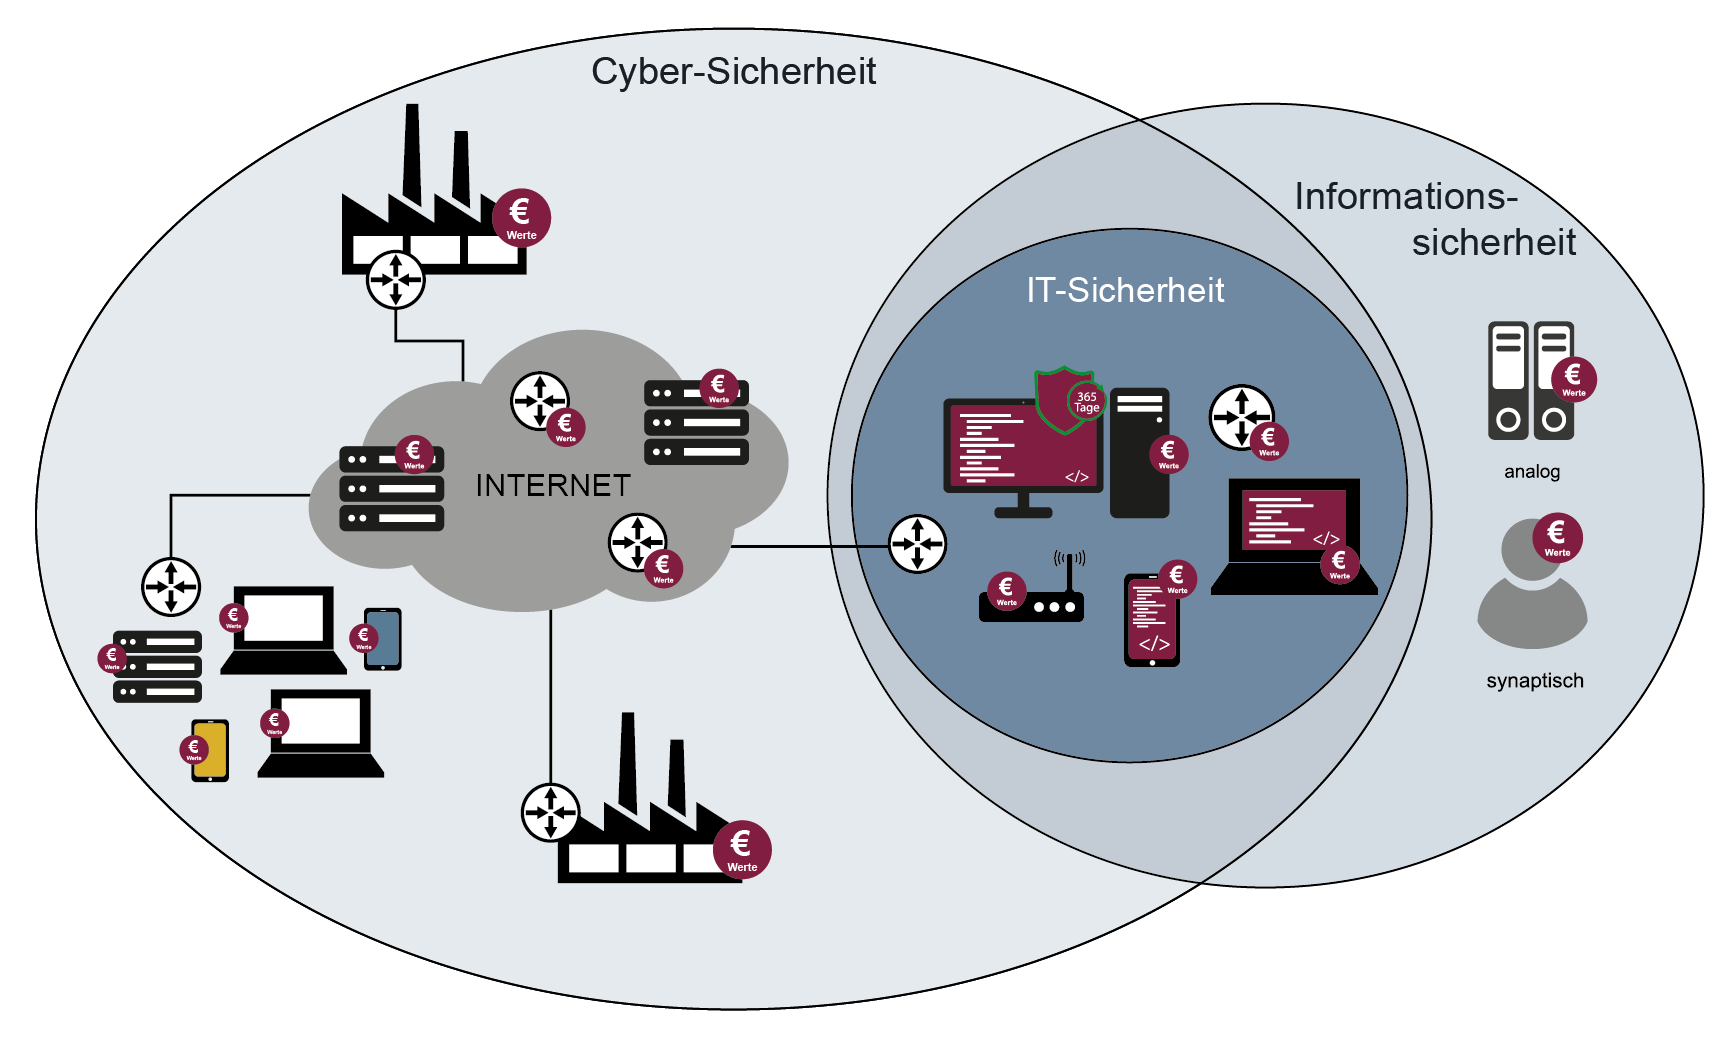 IT-Sicherheit in Zusammenhang mit Informationssicherheit und Cyber-Sicherheit